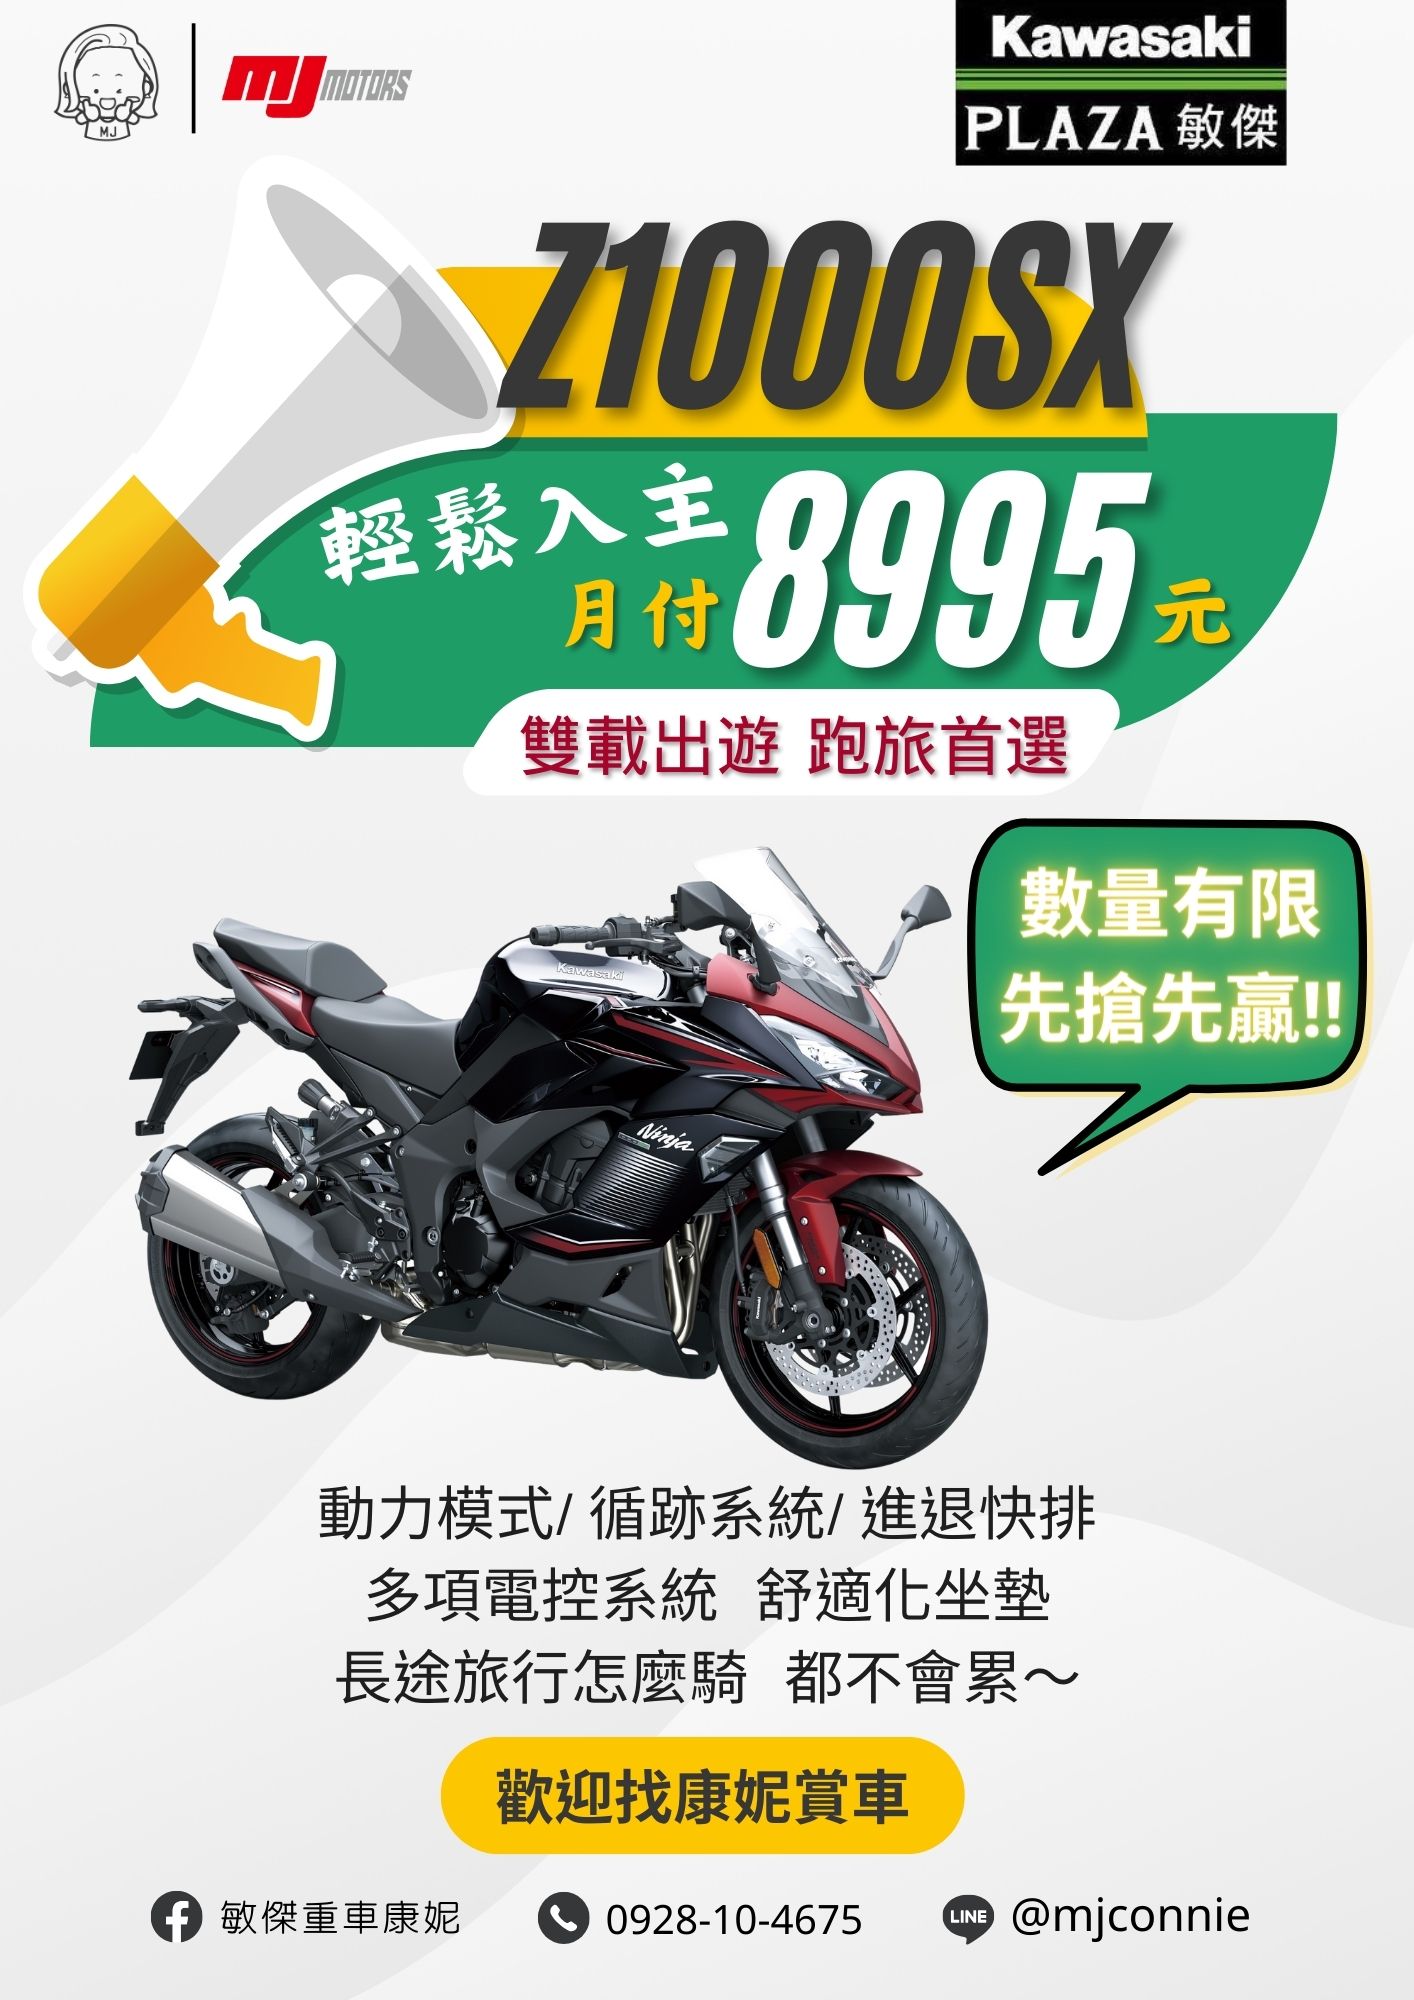 【敏傑車業資深銷售專員 康妮 Connie】KAWASAKI NINJA1000 - 「Webike-摩托車市」 『敏傑康妮』Kawasaki Ninja 1000SX Z1000SX 忍千最佳旅跑 適合長途旅行的重機 價格依實際為主